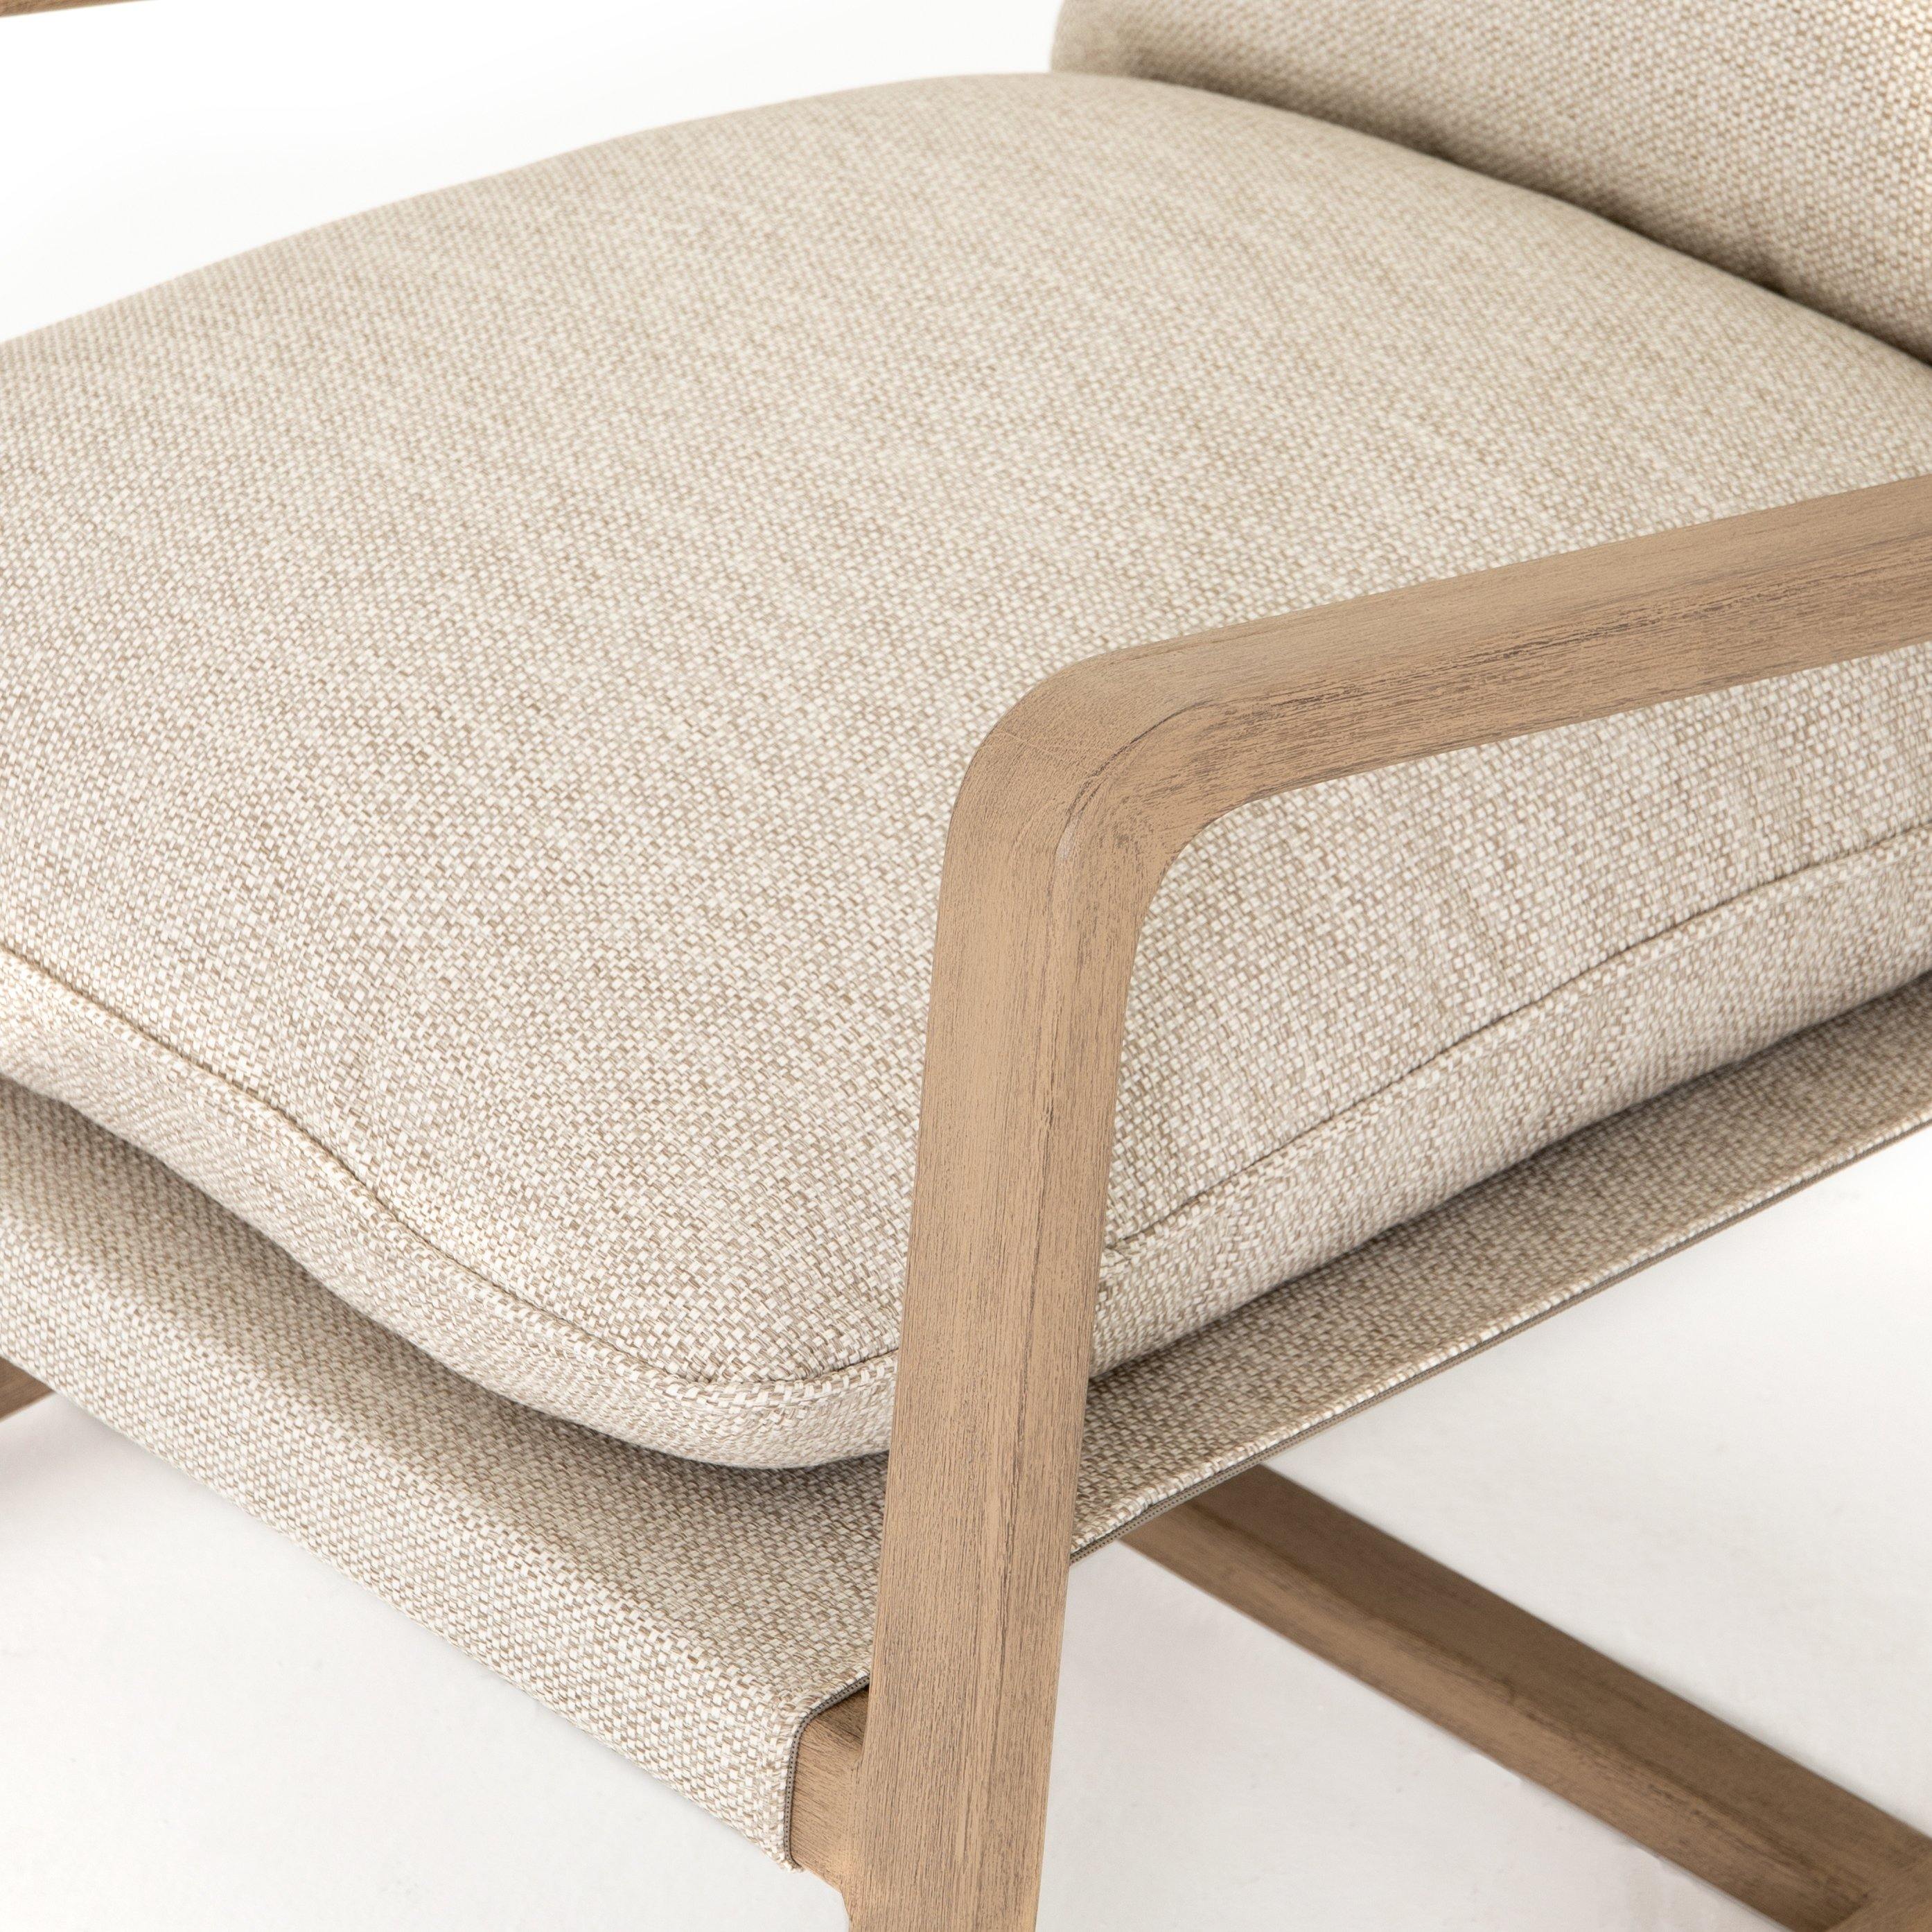 Lane Outdoor Chair - Reimagine Designs - Outdoor, Outdoor Armchairs